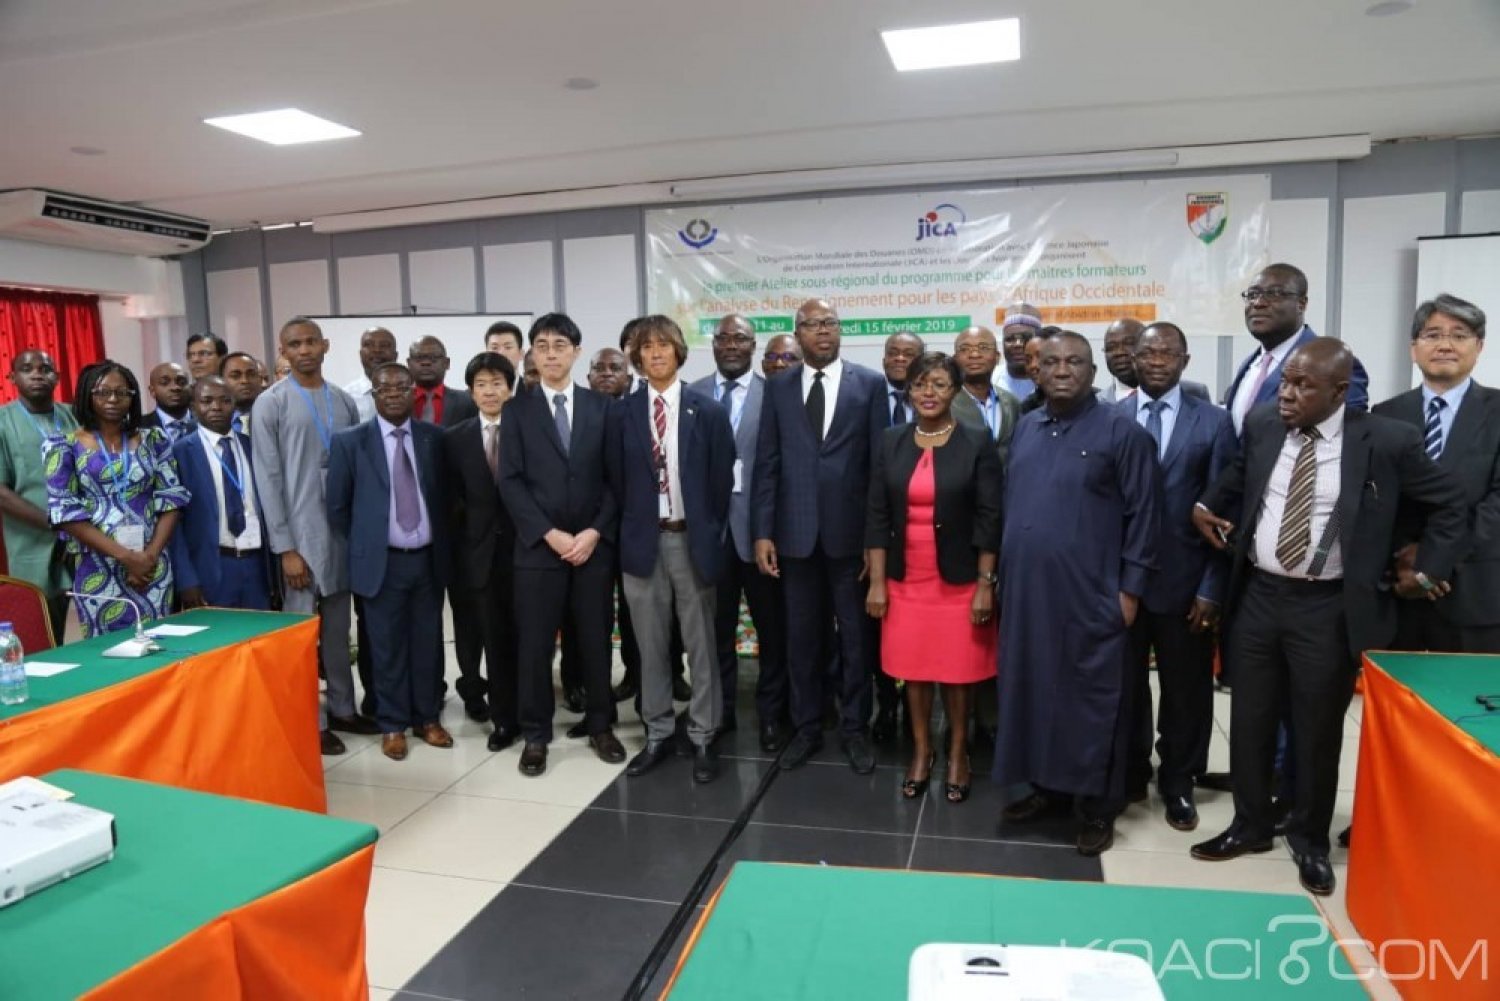 Côte d'Ivoire Abidjan, six administrations douanières de l'Afrique de l'ouest formées en analyse du renseignement pendant cinq jours grà¢ce à  la JICA et l'OMD